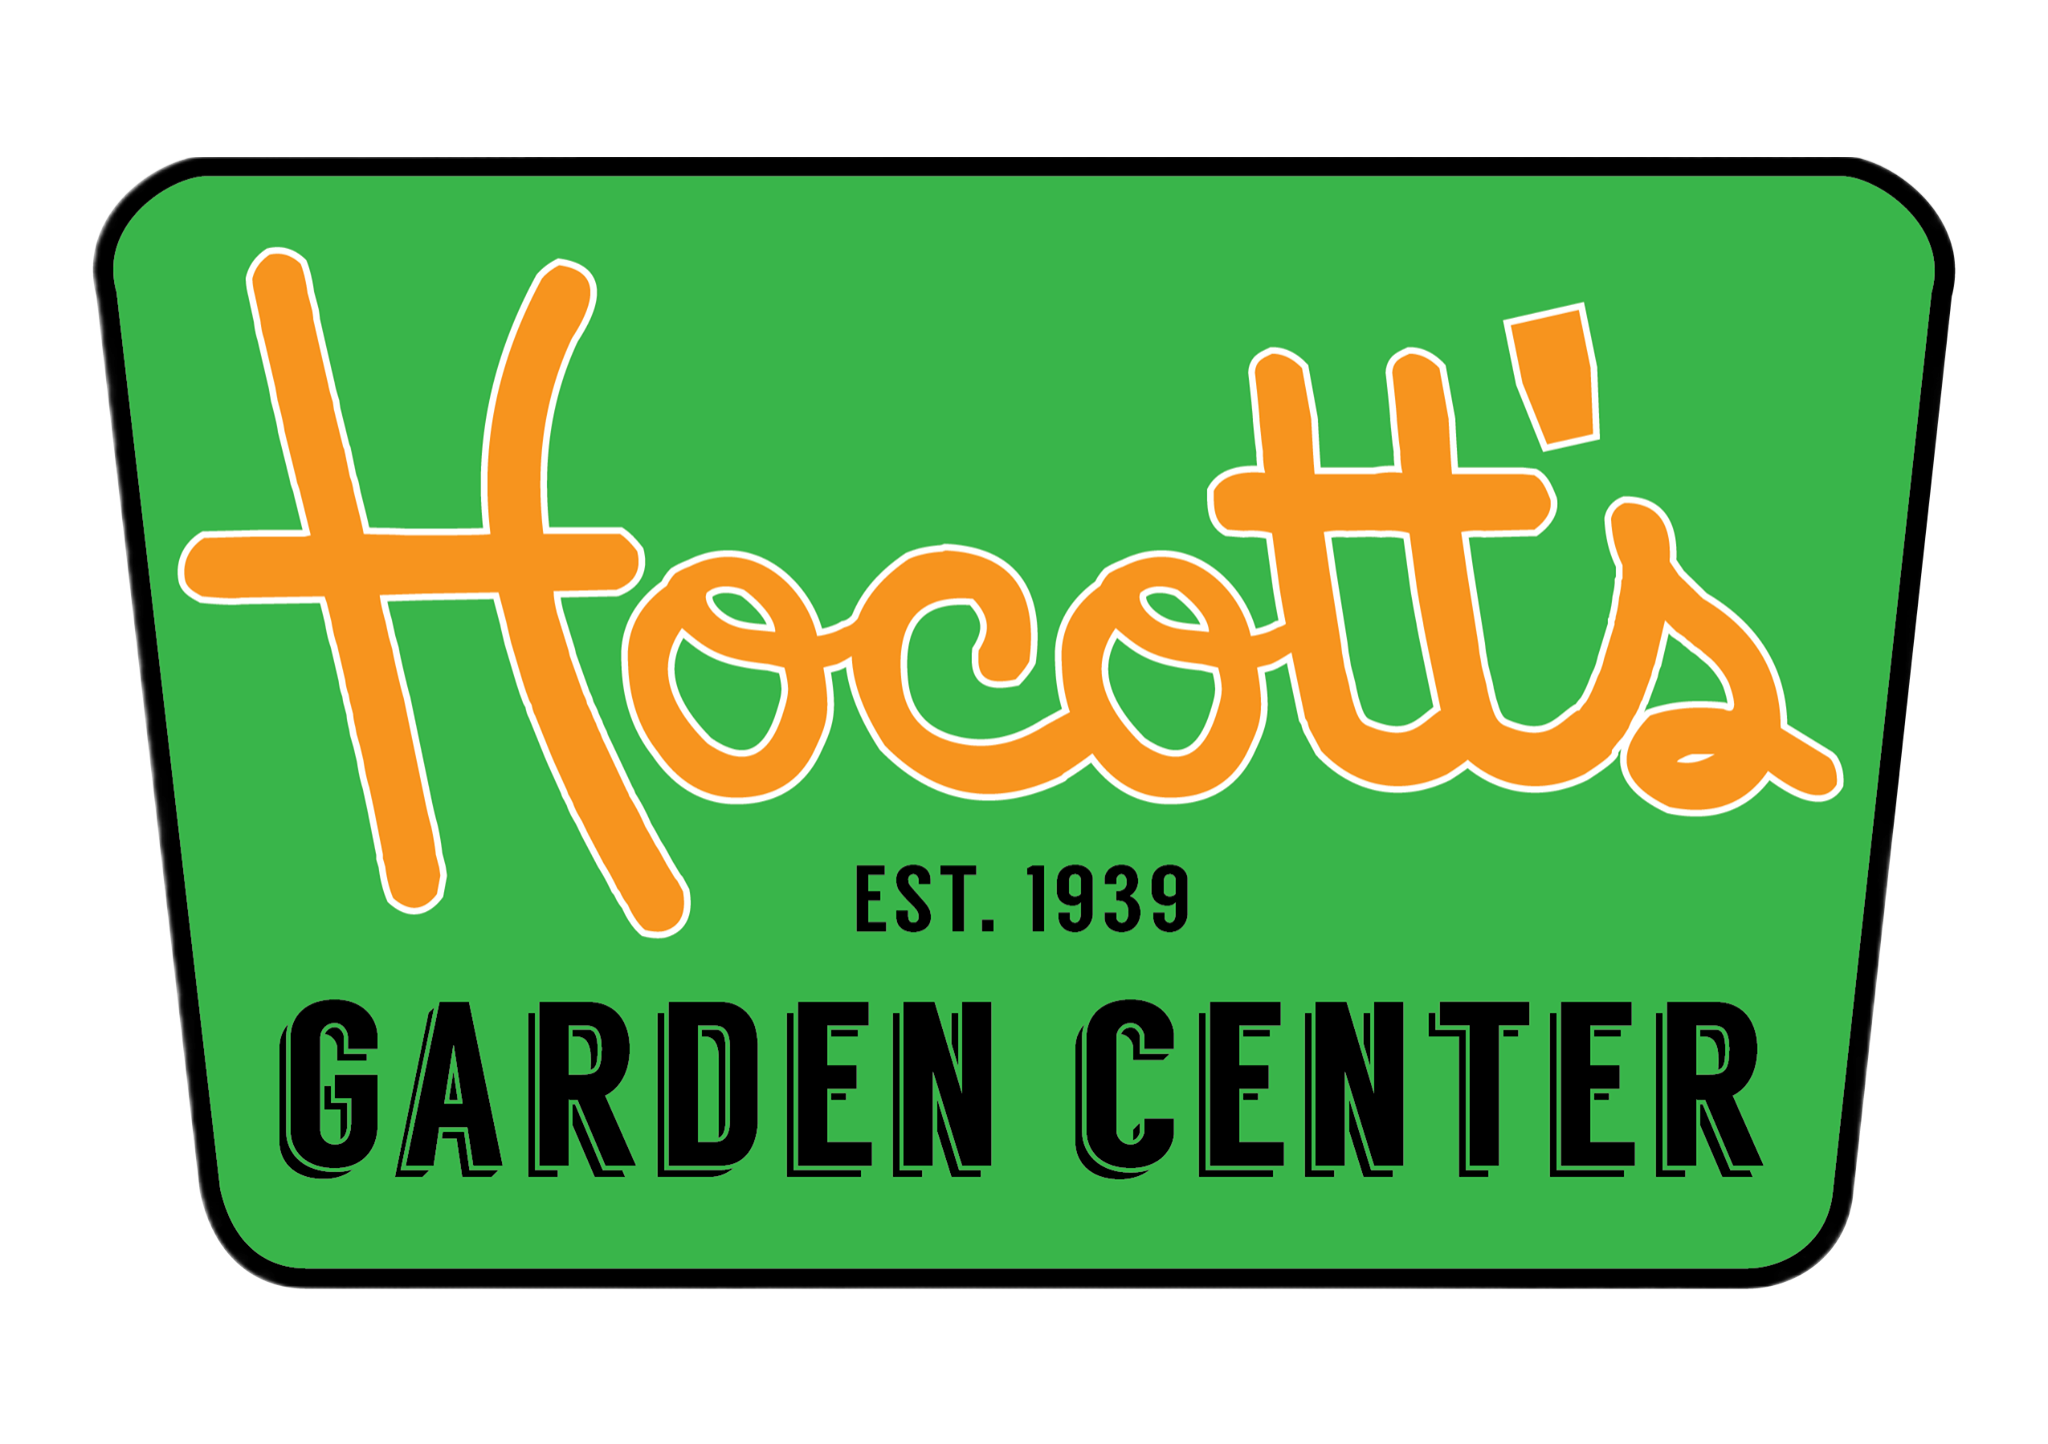 Hocott's Garden Center